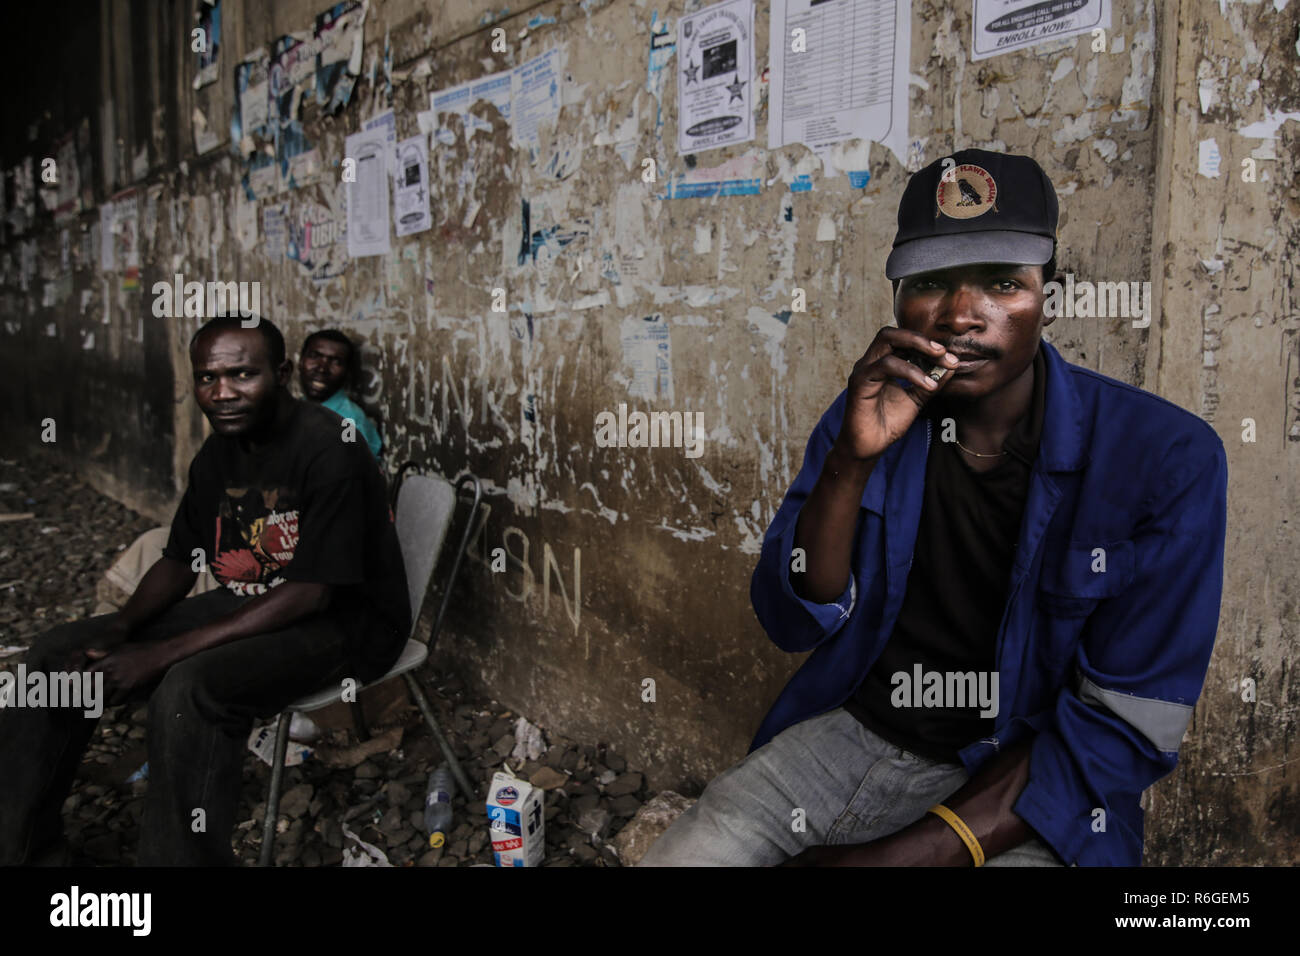 Smoking weed in Lusaka slums. Lusaka, Zambia. Stock Photo